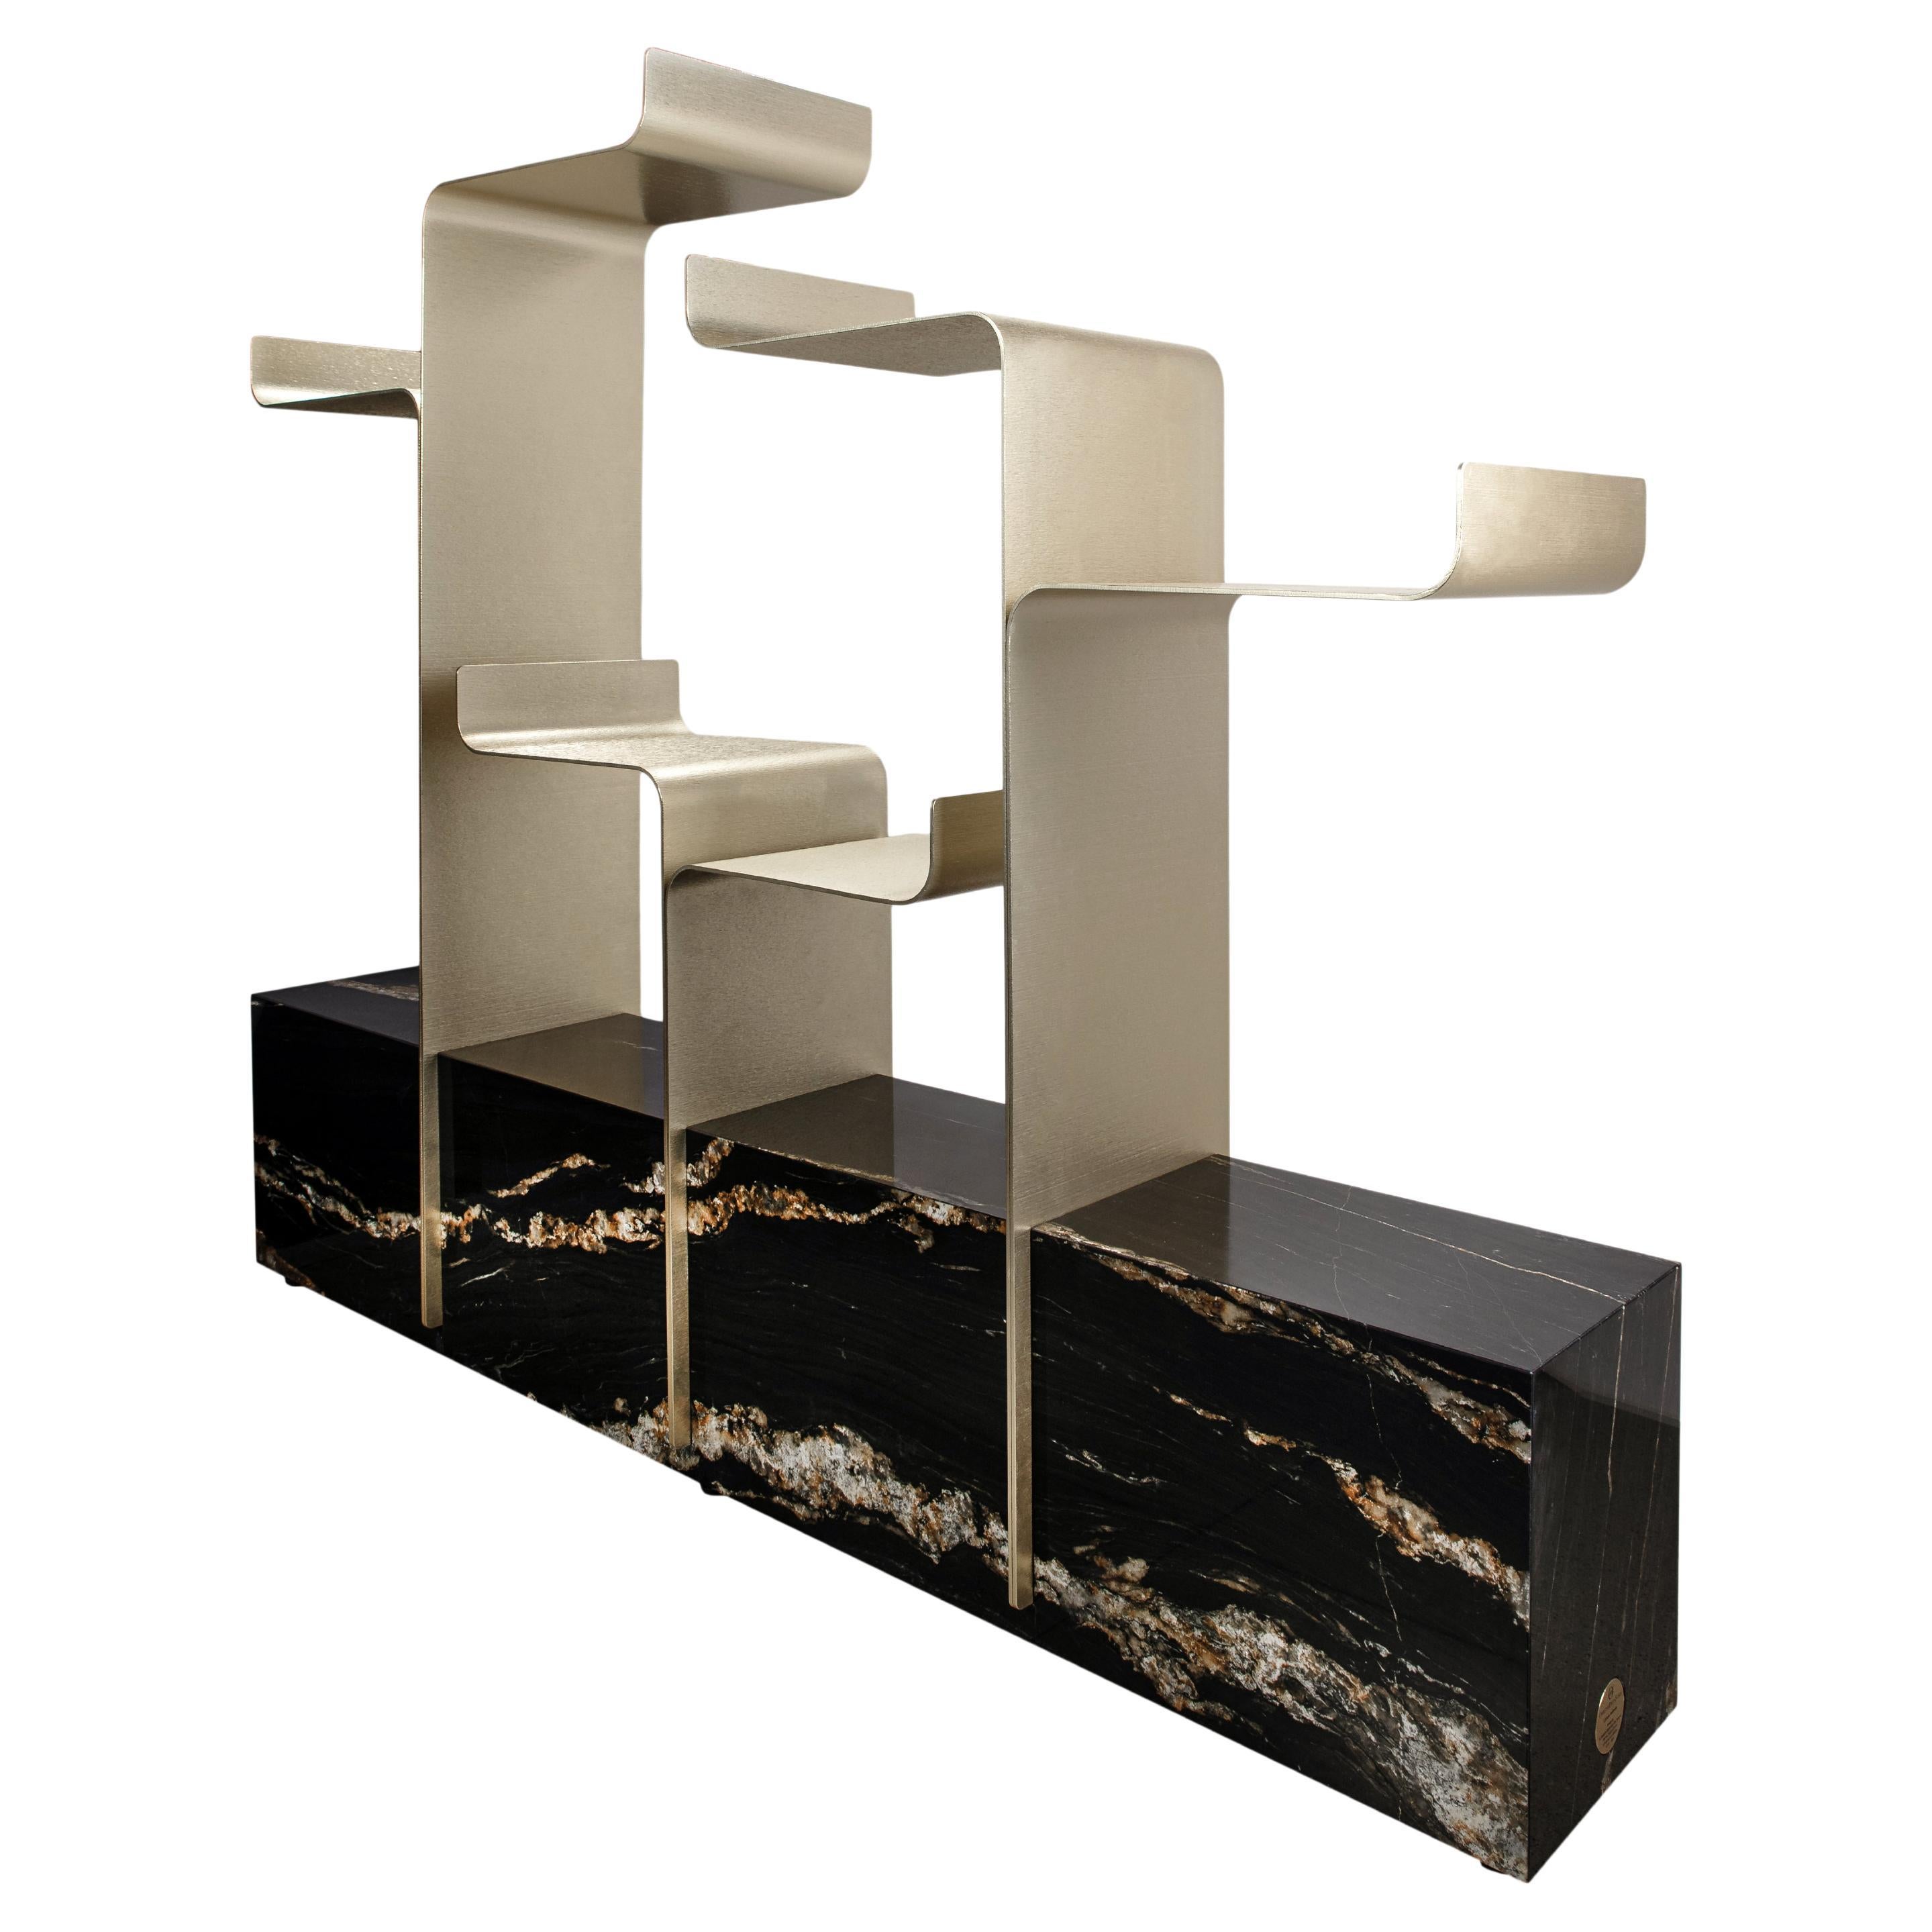 Tropical Stone "Aedicula" Bookcase design by MMDesign for Officina della Scala